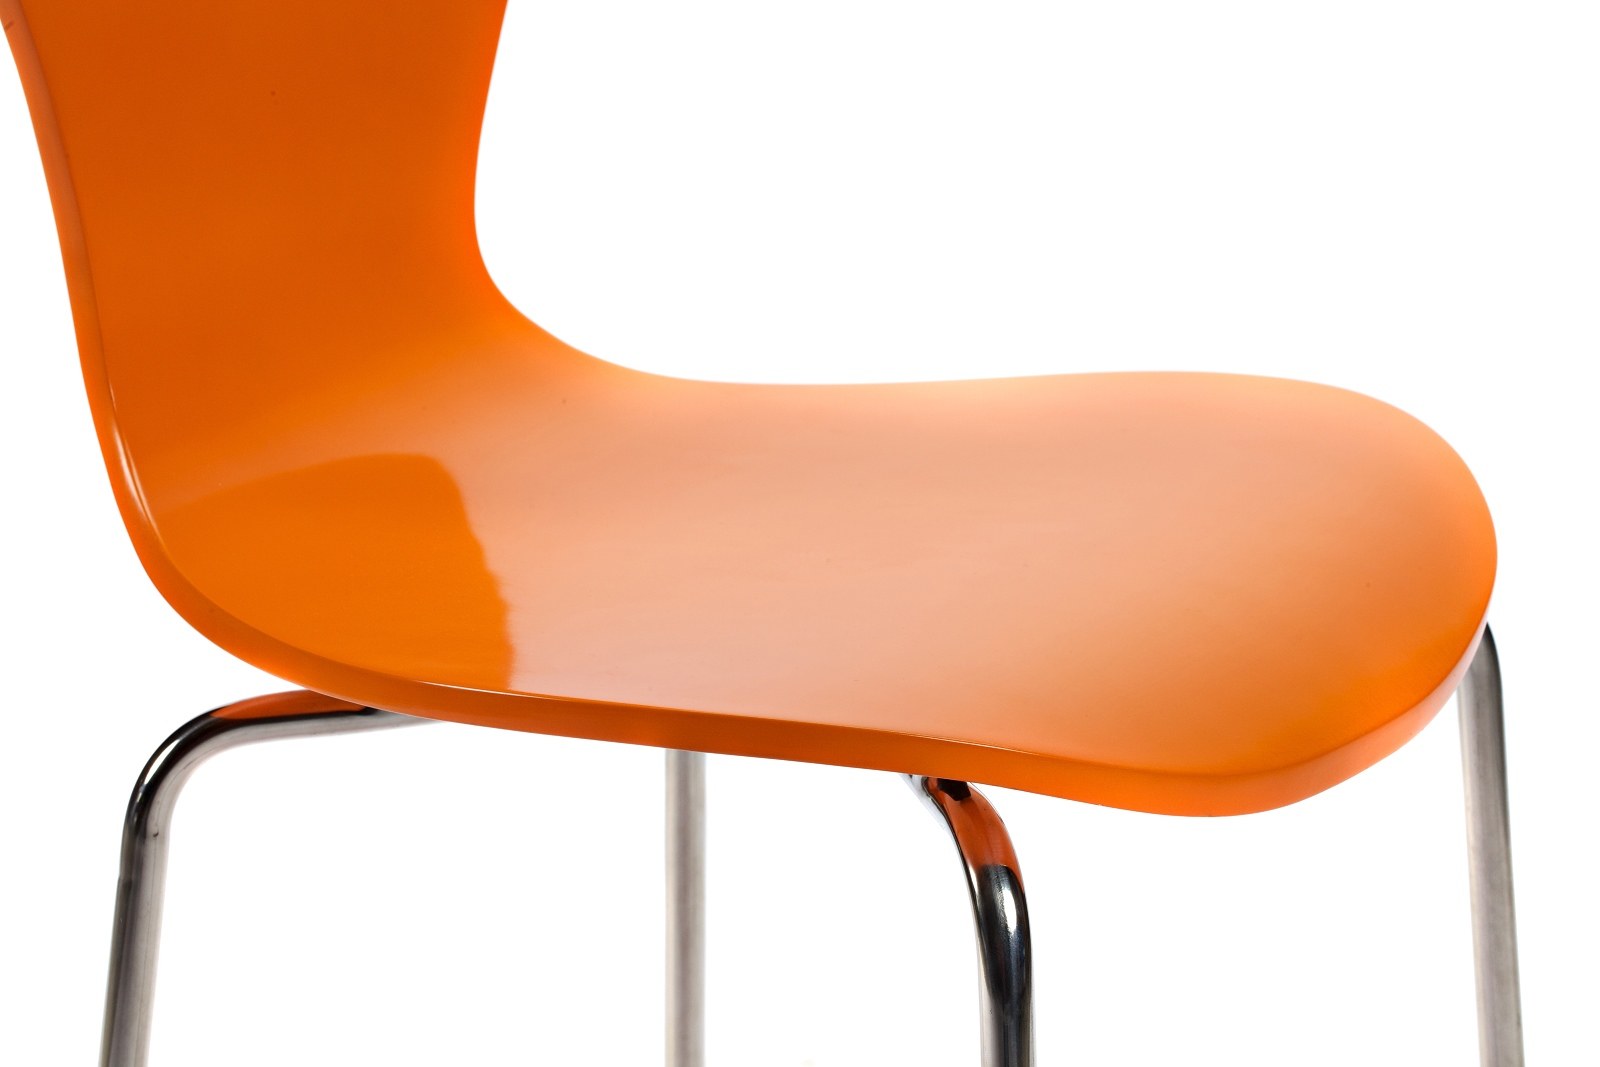 Стул Ant Chair оранжевый металл. Стул Rich оранжевый (алюмин.ножки). Стул кухонный металлический ножки хром красный пластиковый (арт 6632). Стул (b68 or, металл/экокожа, оранжевый, s). Стул купить тагил